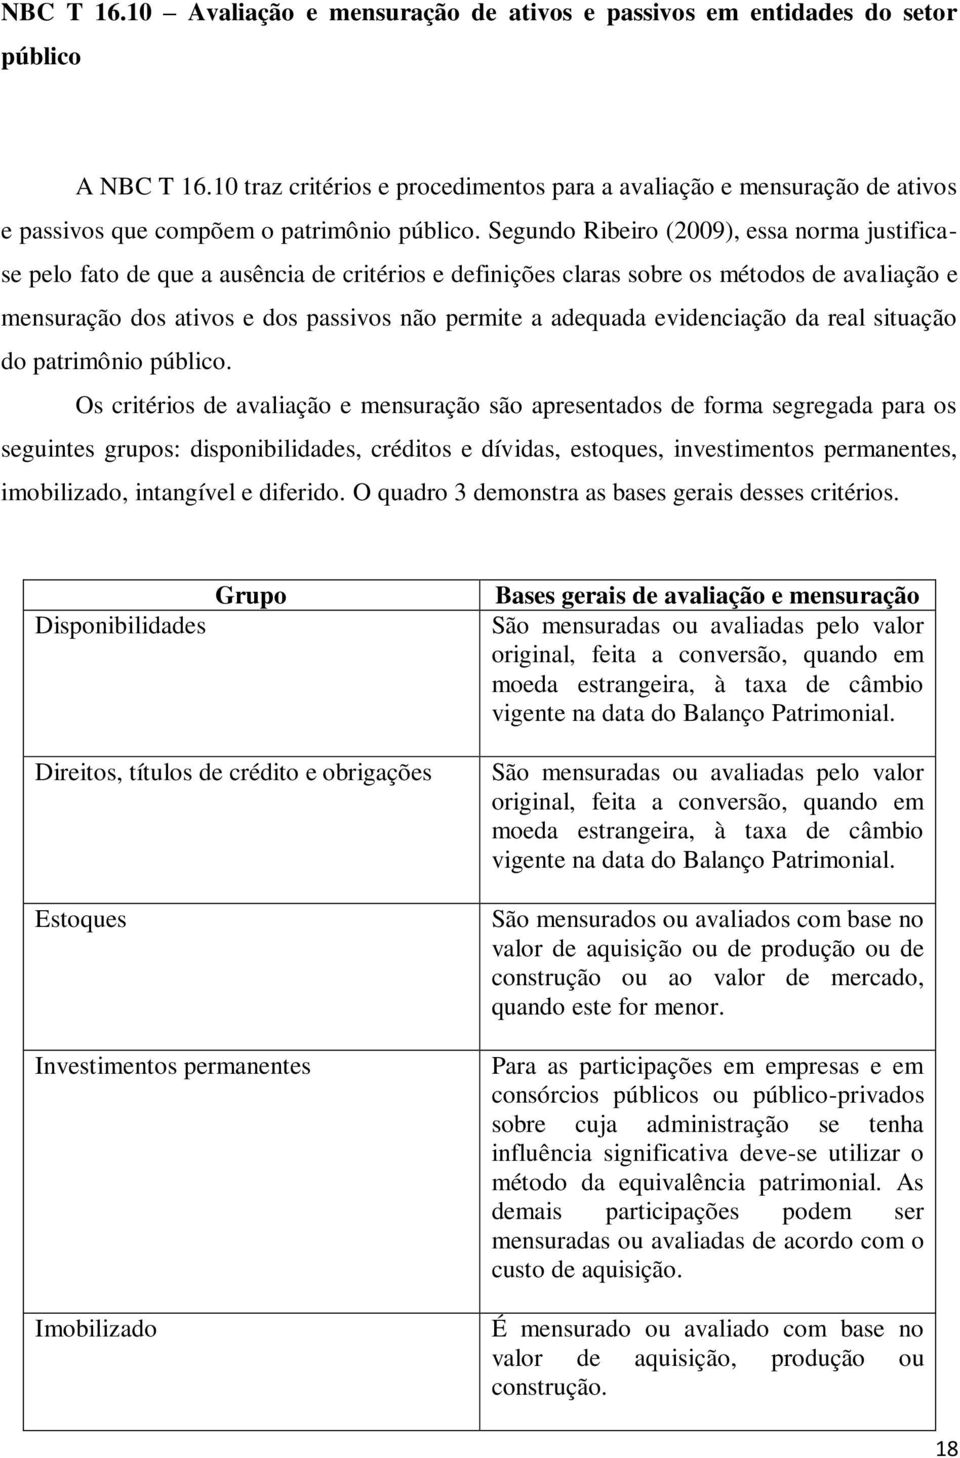 Segundo Ribeiro (2009), essa norma justificase pelo fato de que a ausência de critérios e definições claras sobre os métodos de avaliação e mensuração dos ativos e dos passivos não permite a adequada